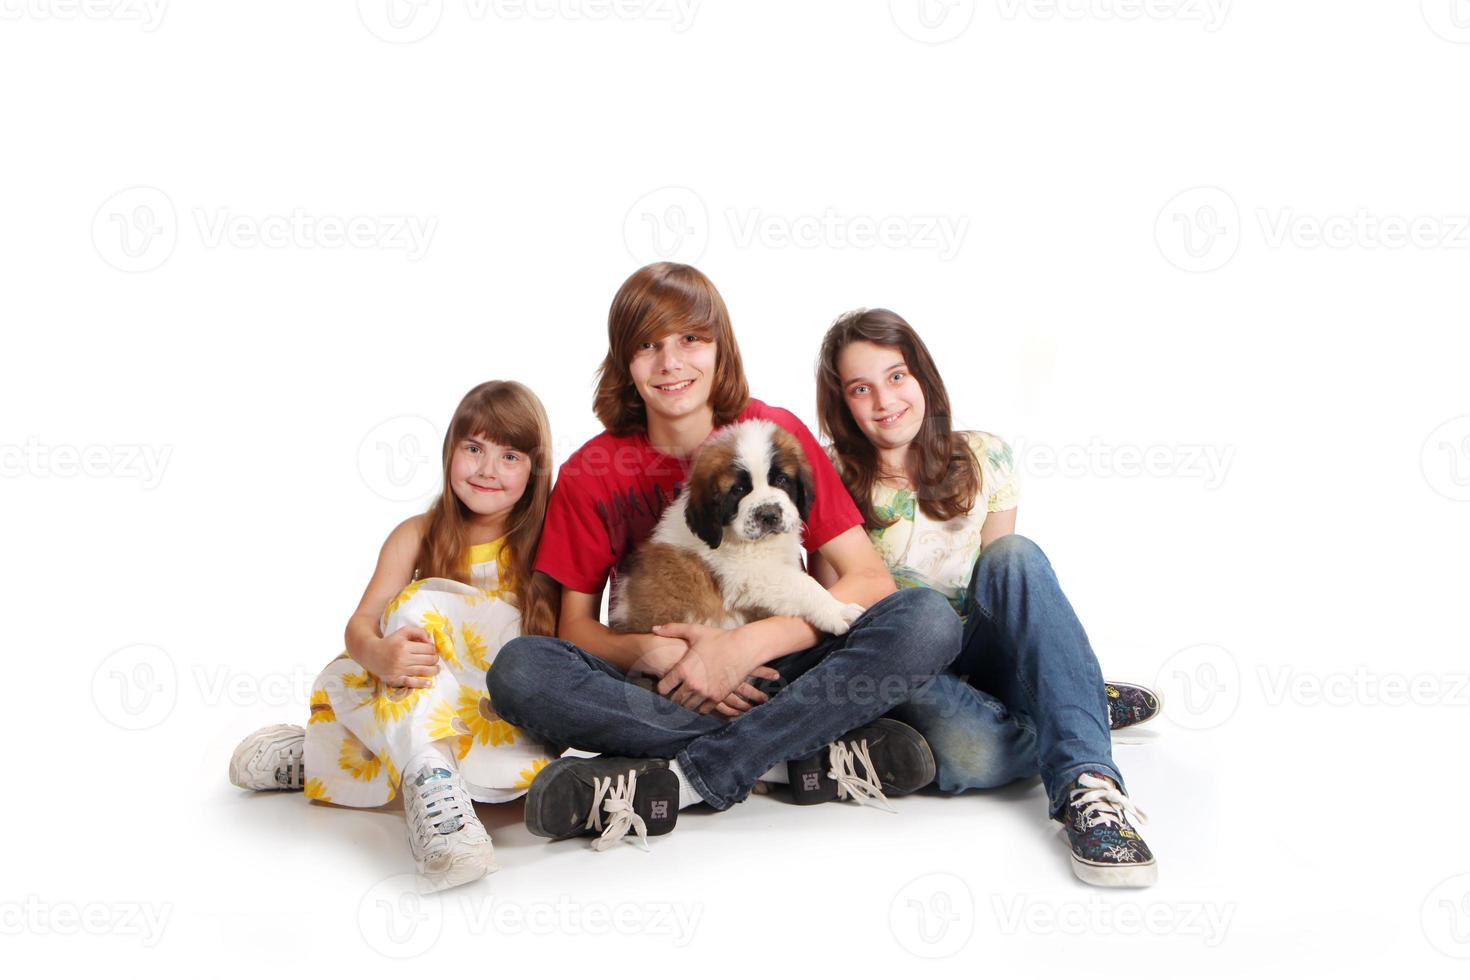 filhos de irmãos com seu novo cachorrinho de São Bernardo foto